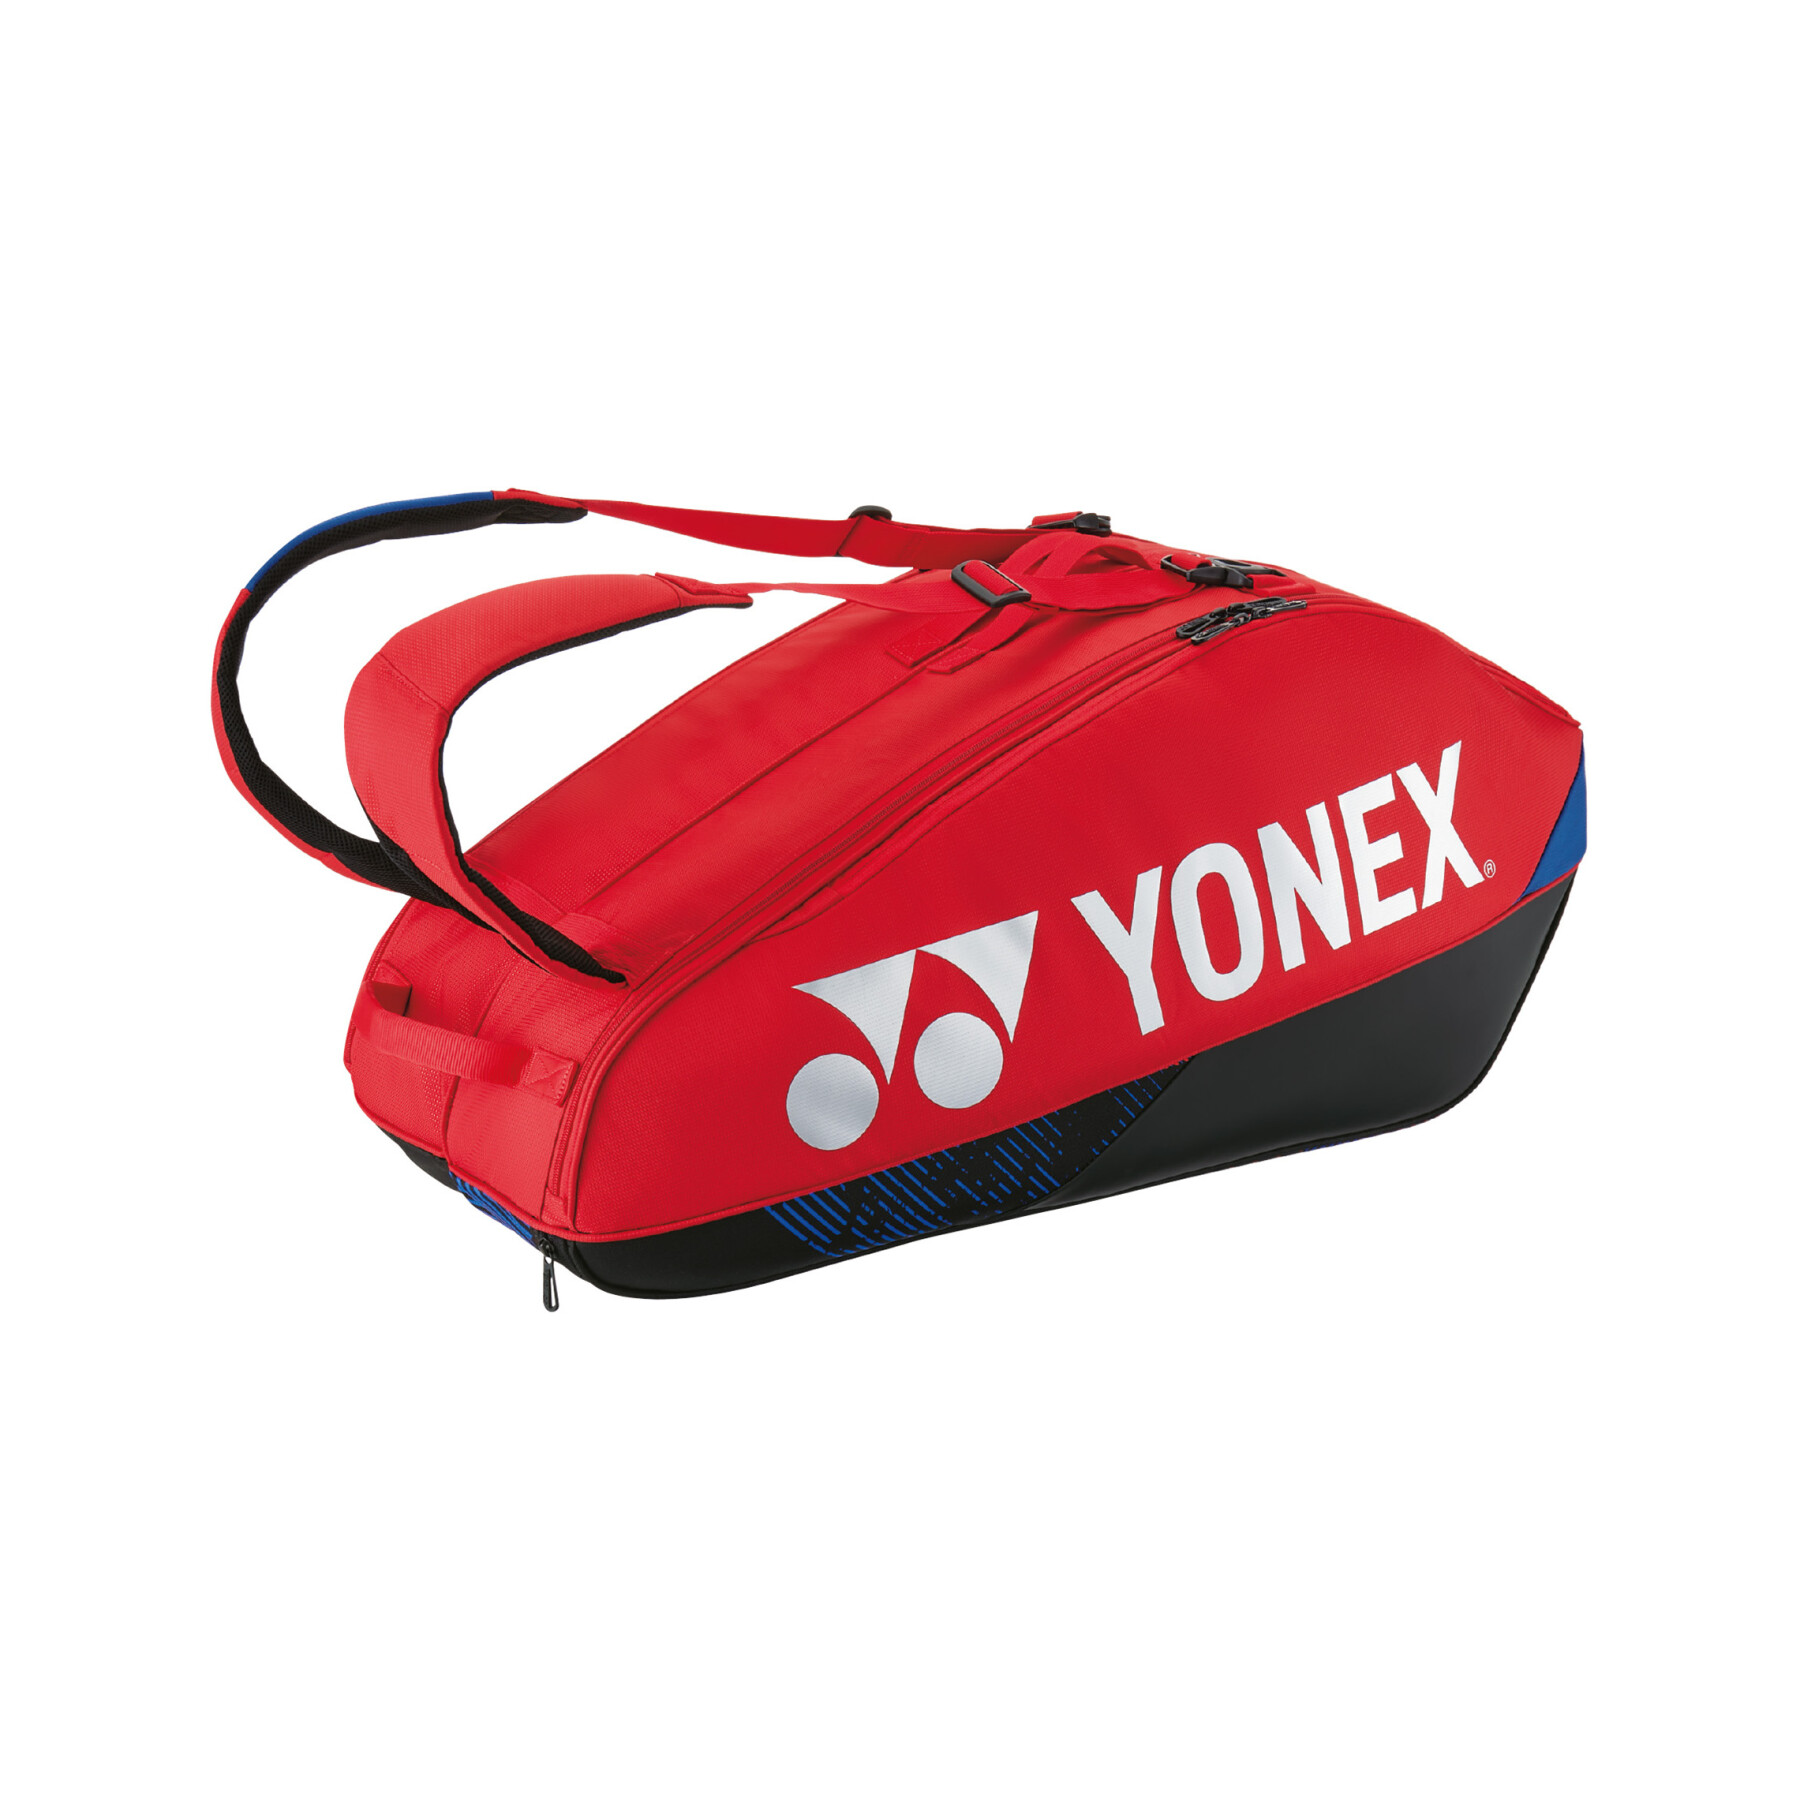 Tasche für Badmintonschläger Yonex Pro 92426